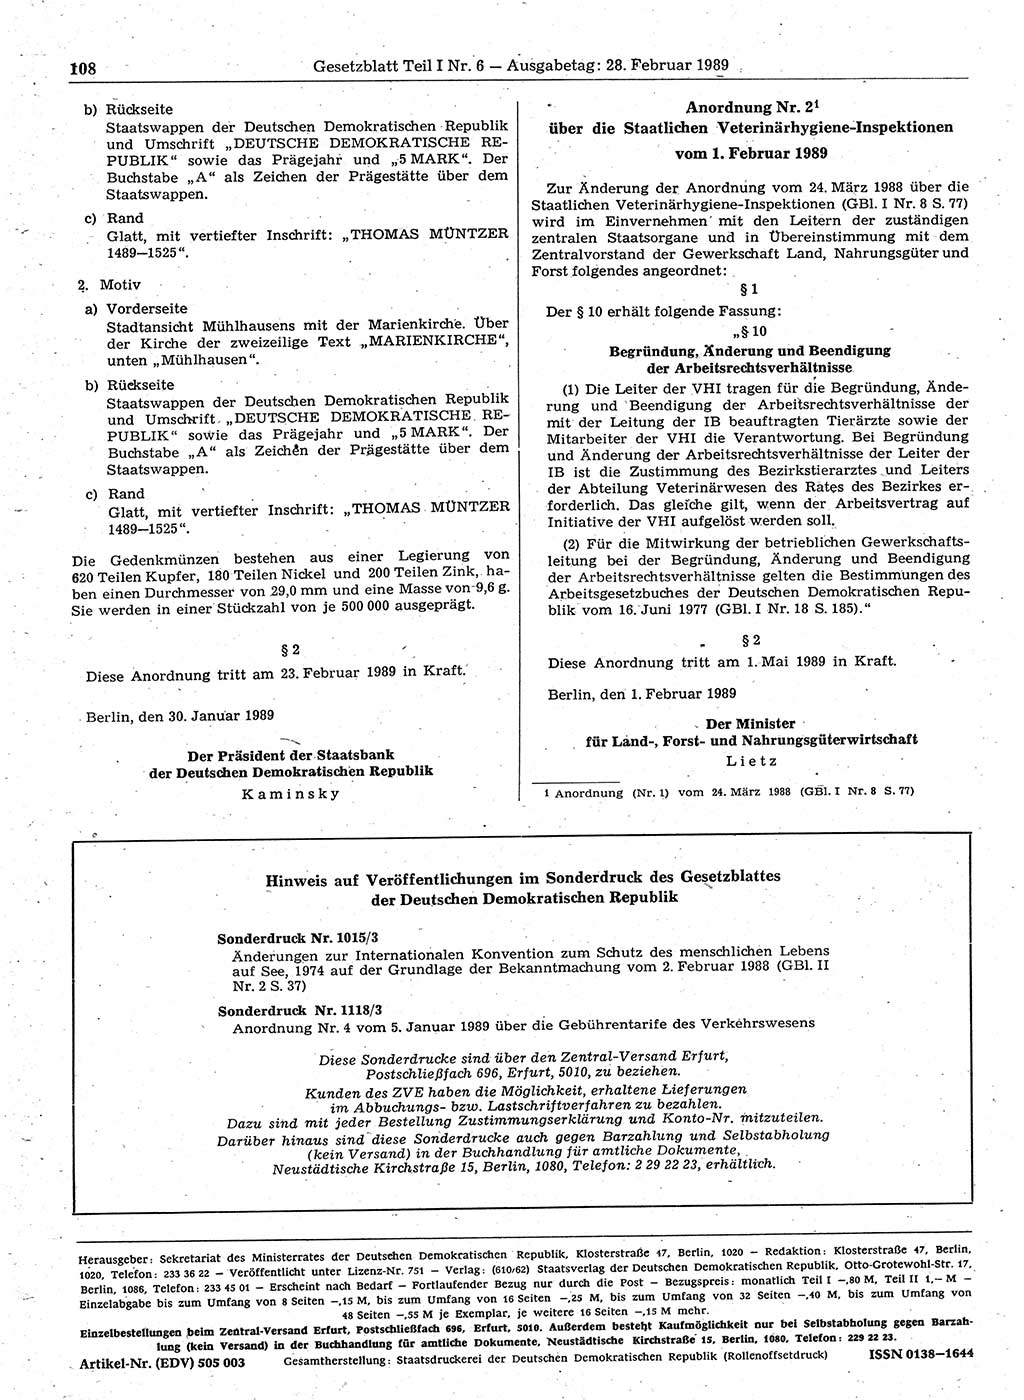 Gesetzblatt (GBl.) der Deutschen Demokratischen Republik (DDR) Teil Ⅰ 1989, Seite 108 (GBl. DDR Ⅰ 1989, S. 108)